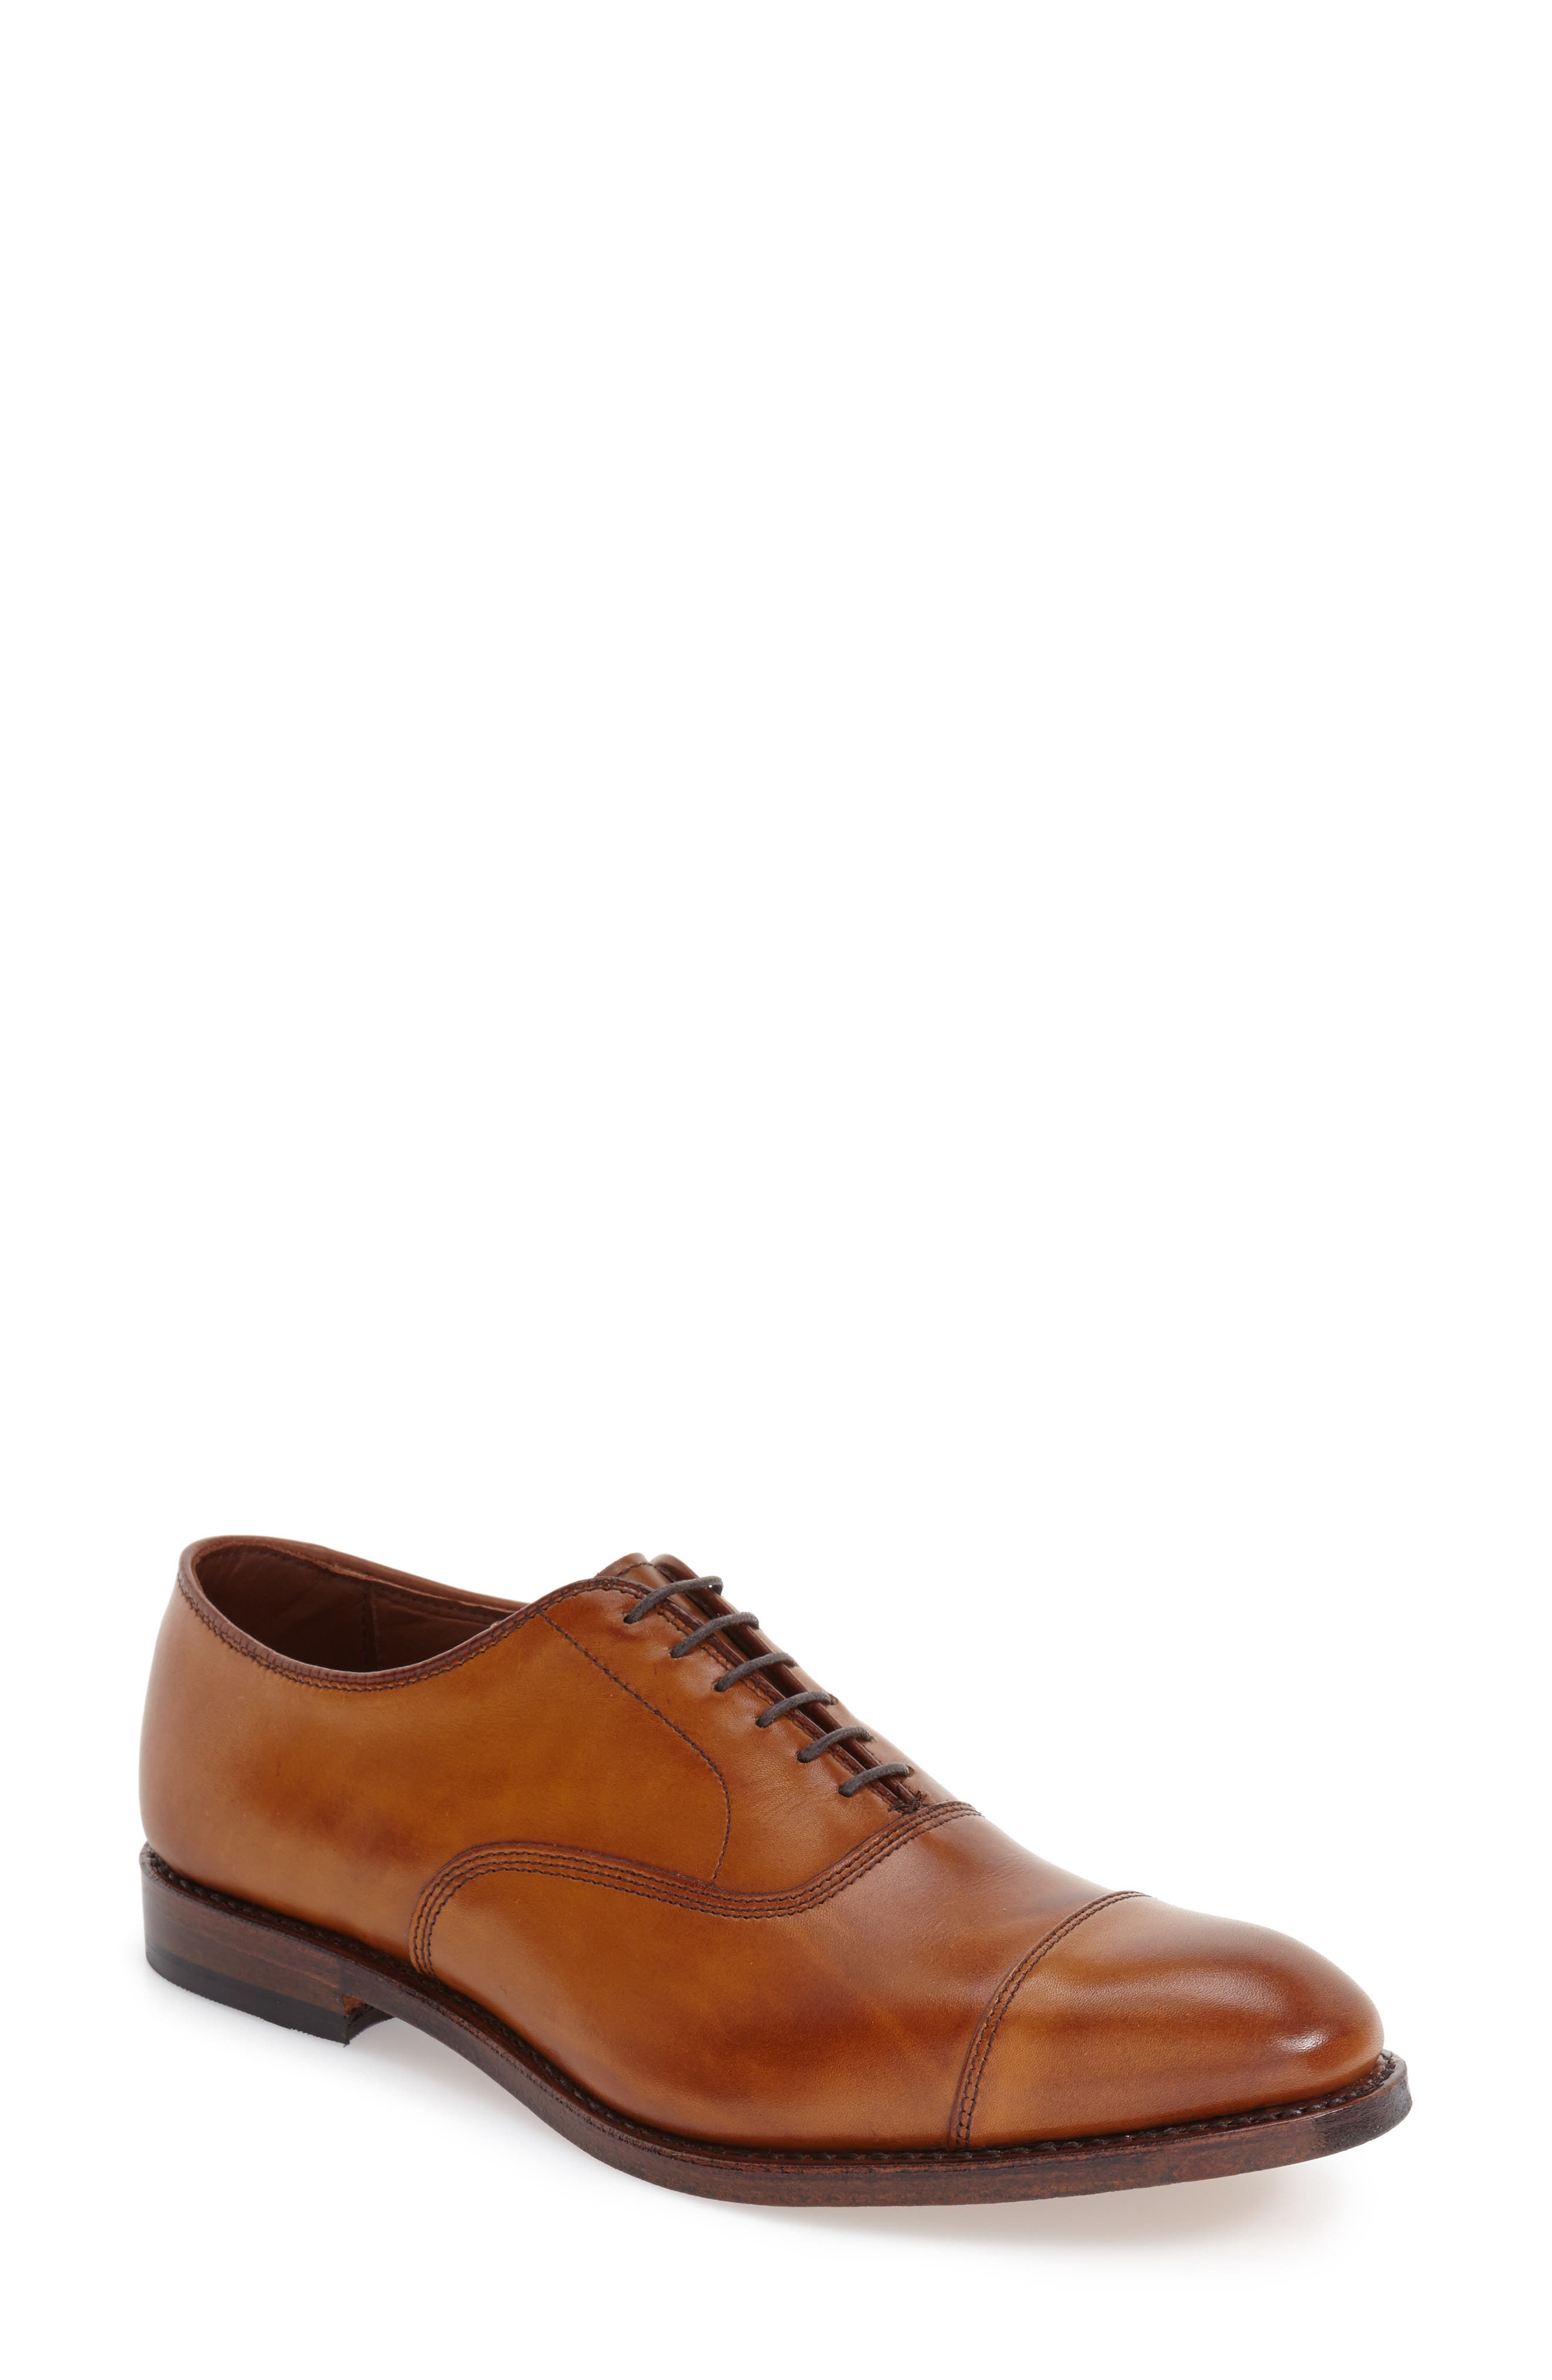 Men's Allen Edmonds Dress Shoes | Nordstrom